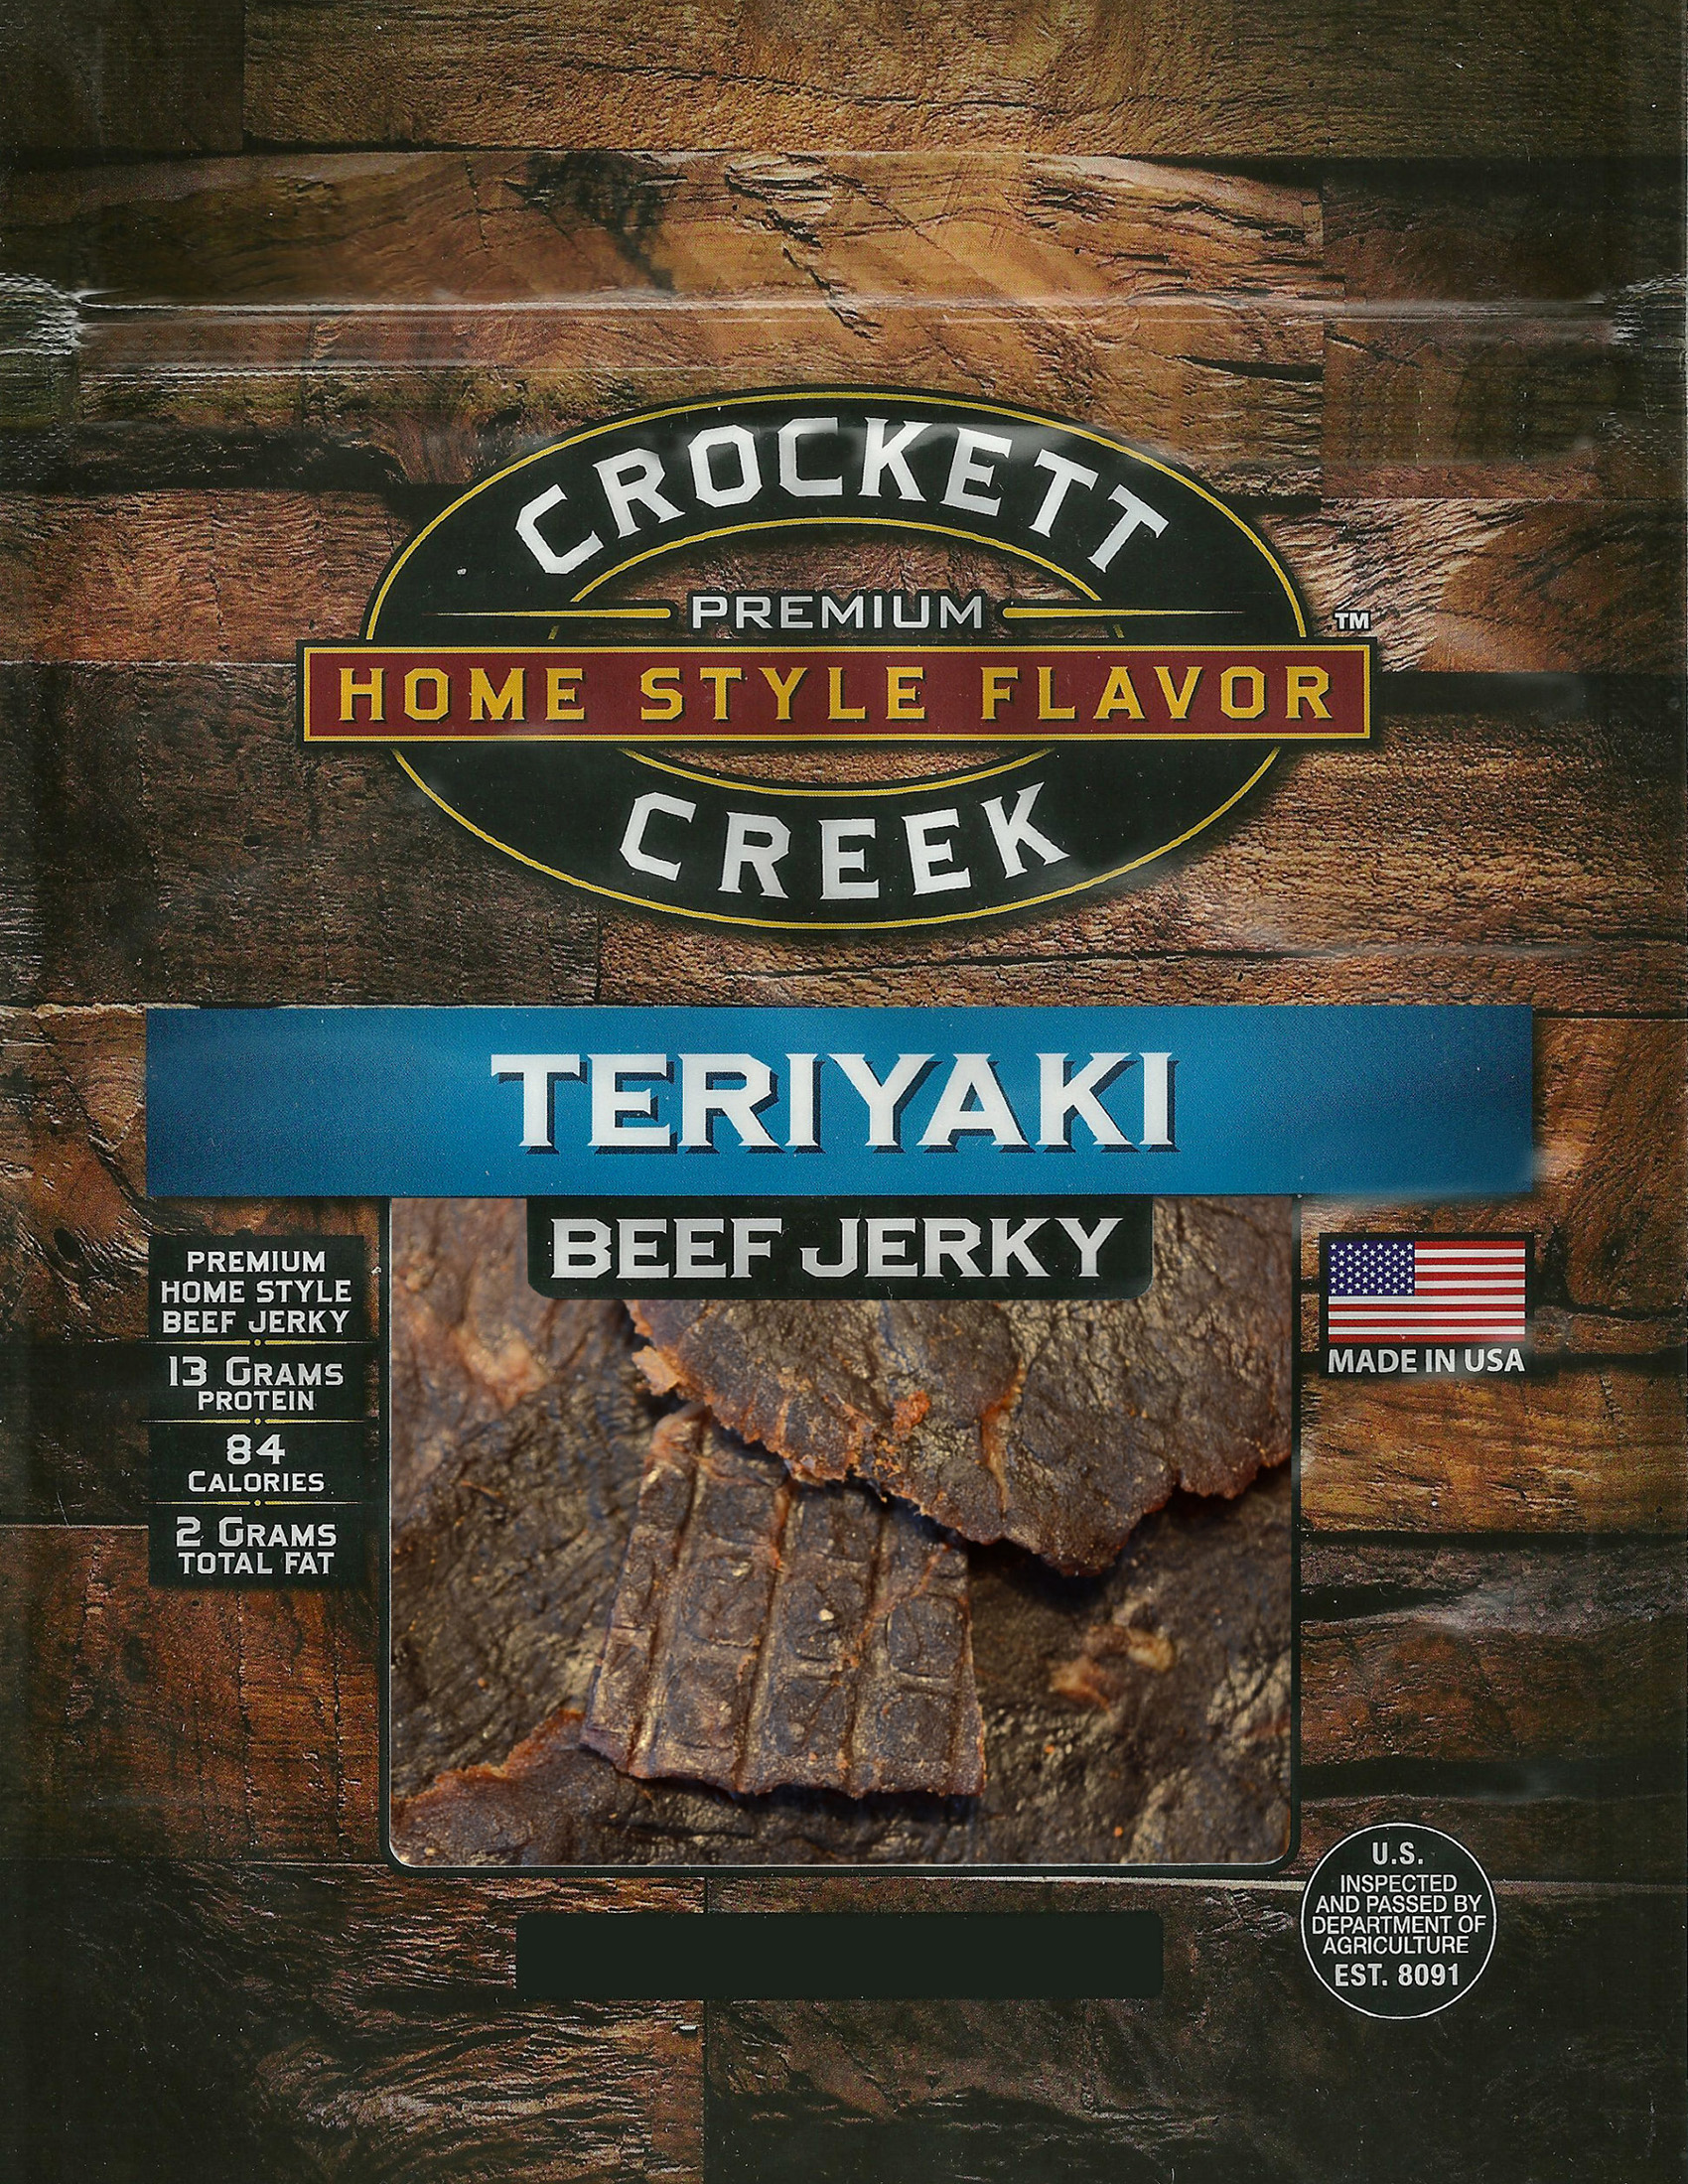 Crockett Creek Teriyaki Beef Jerky